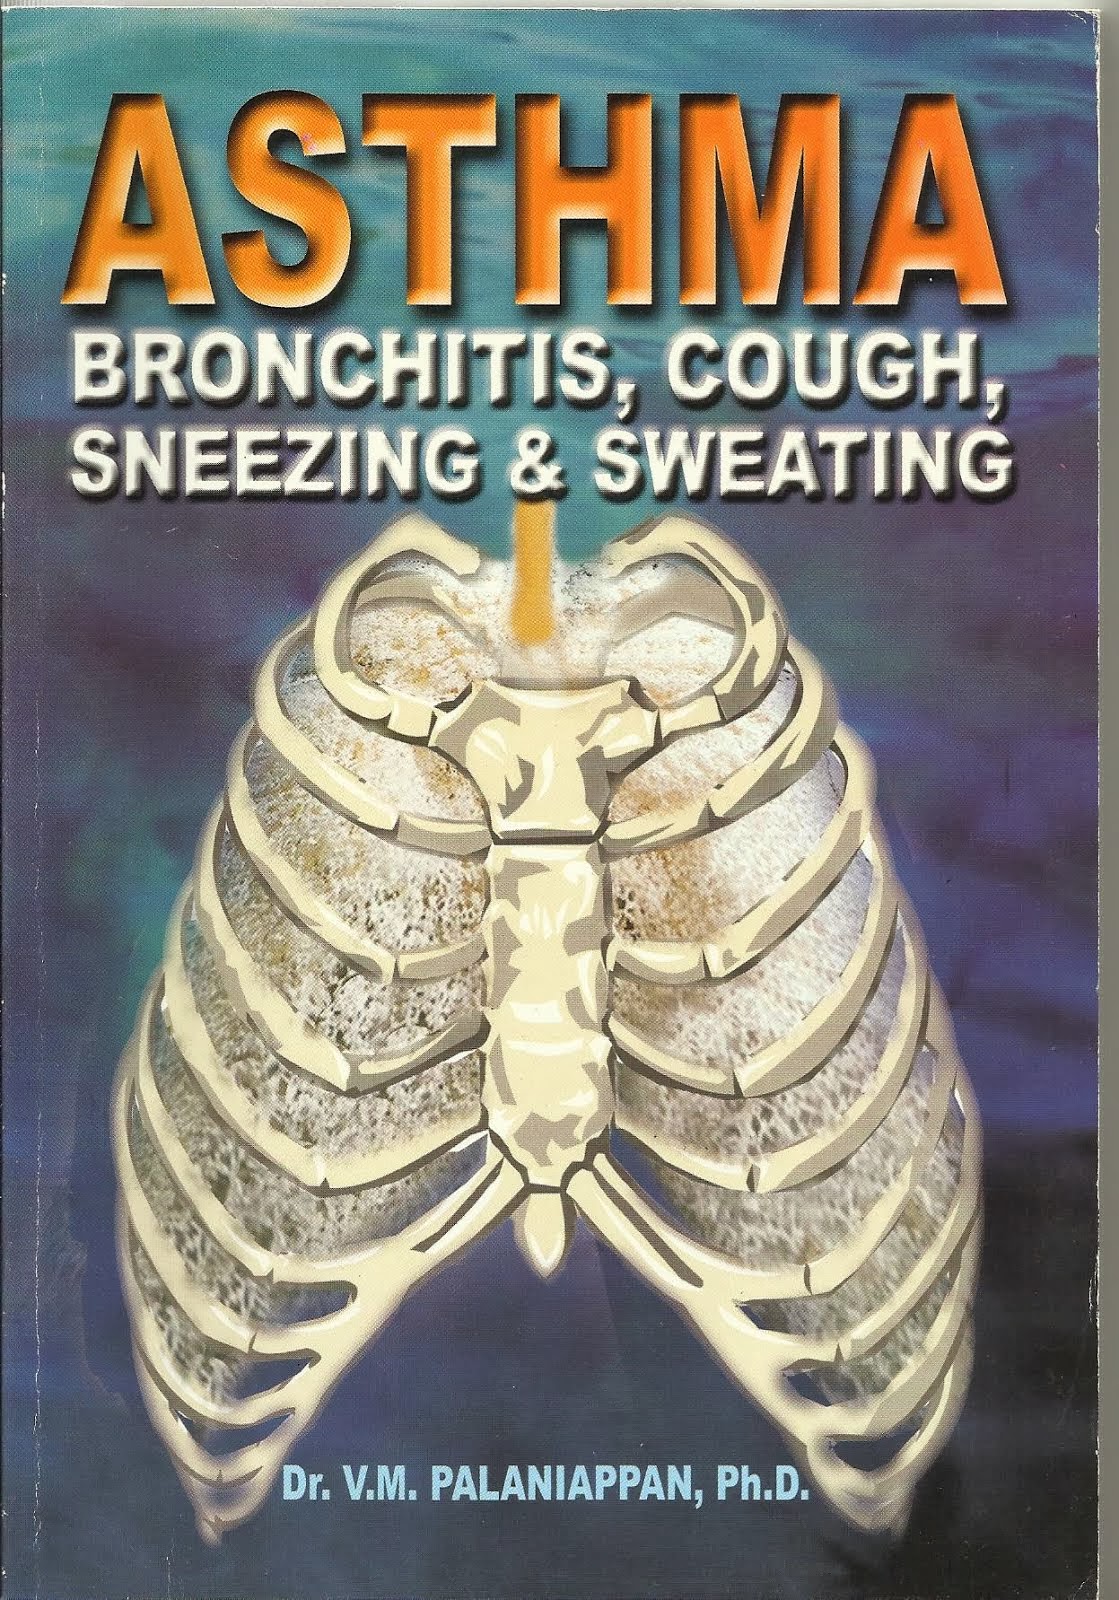 ASTHMA, BRONCHITIS, COUGH, SNEEZING & SWEATING